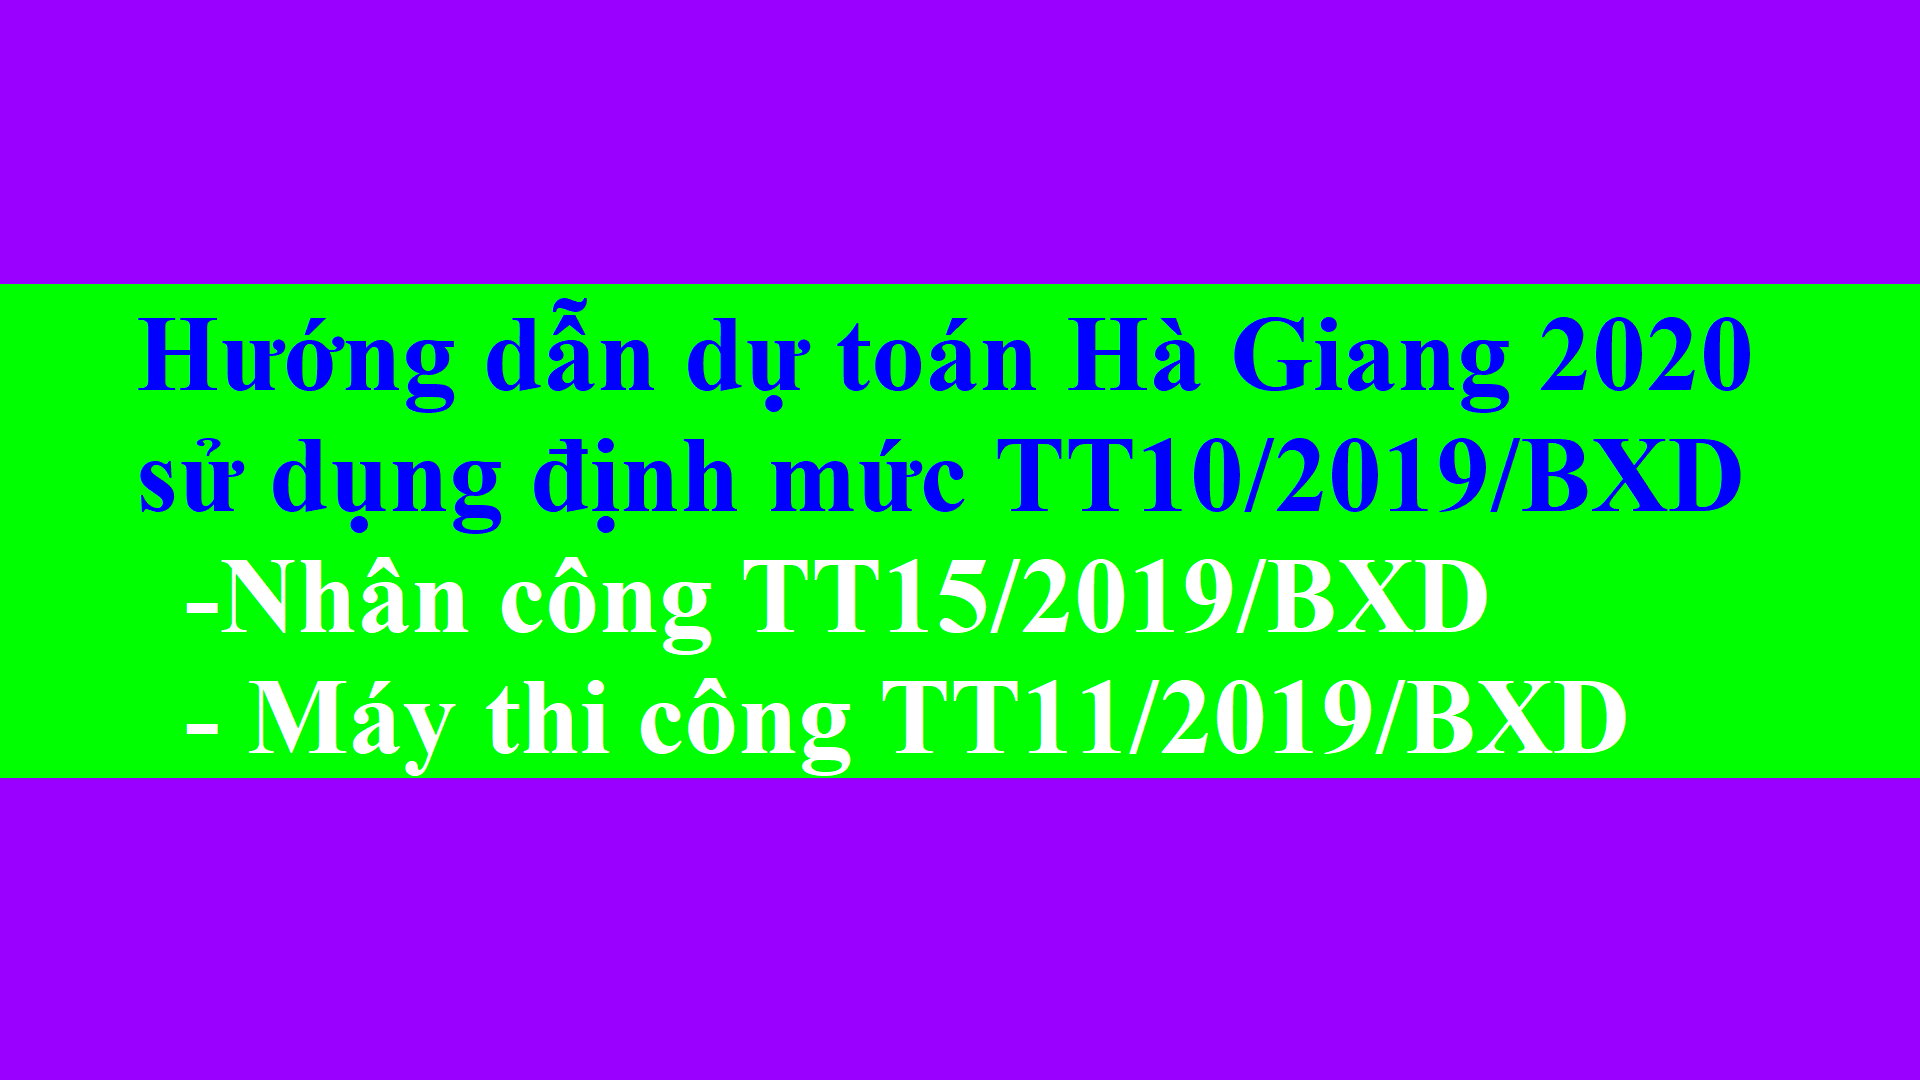 Hướng dẫn dự toán Hà Giang 2020 nhân công theo TT15, máy TT11, chi phí quản lý TT09